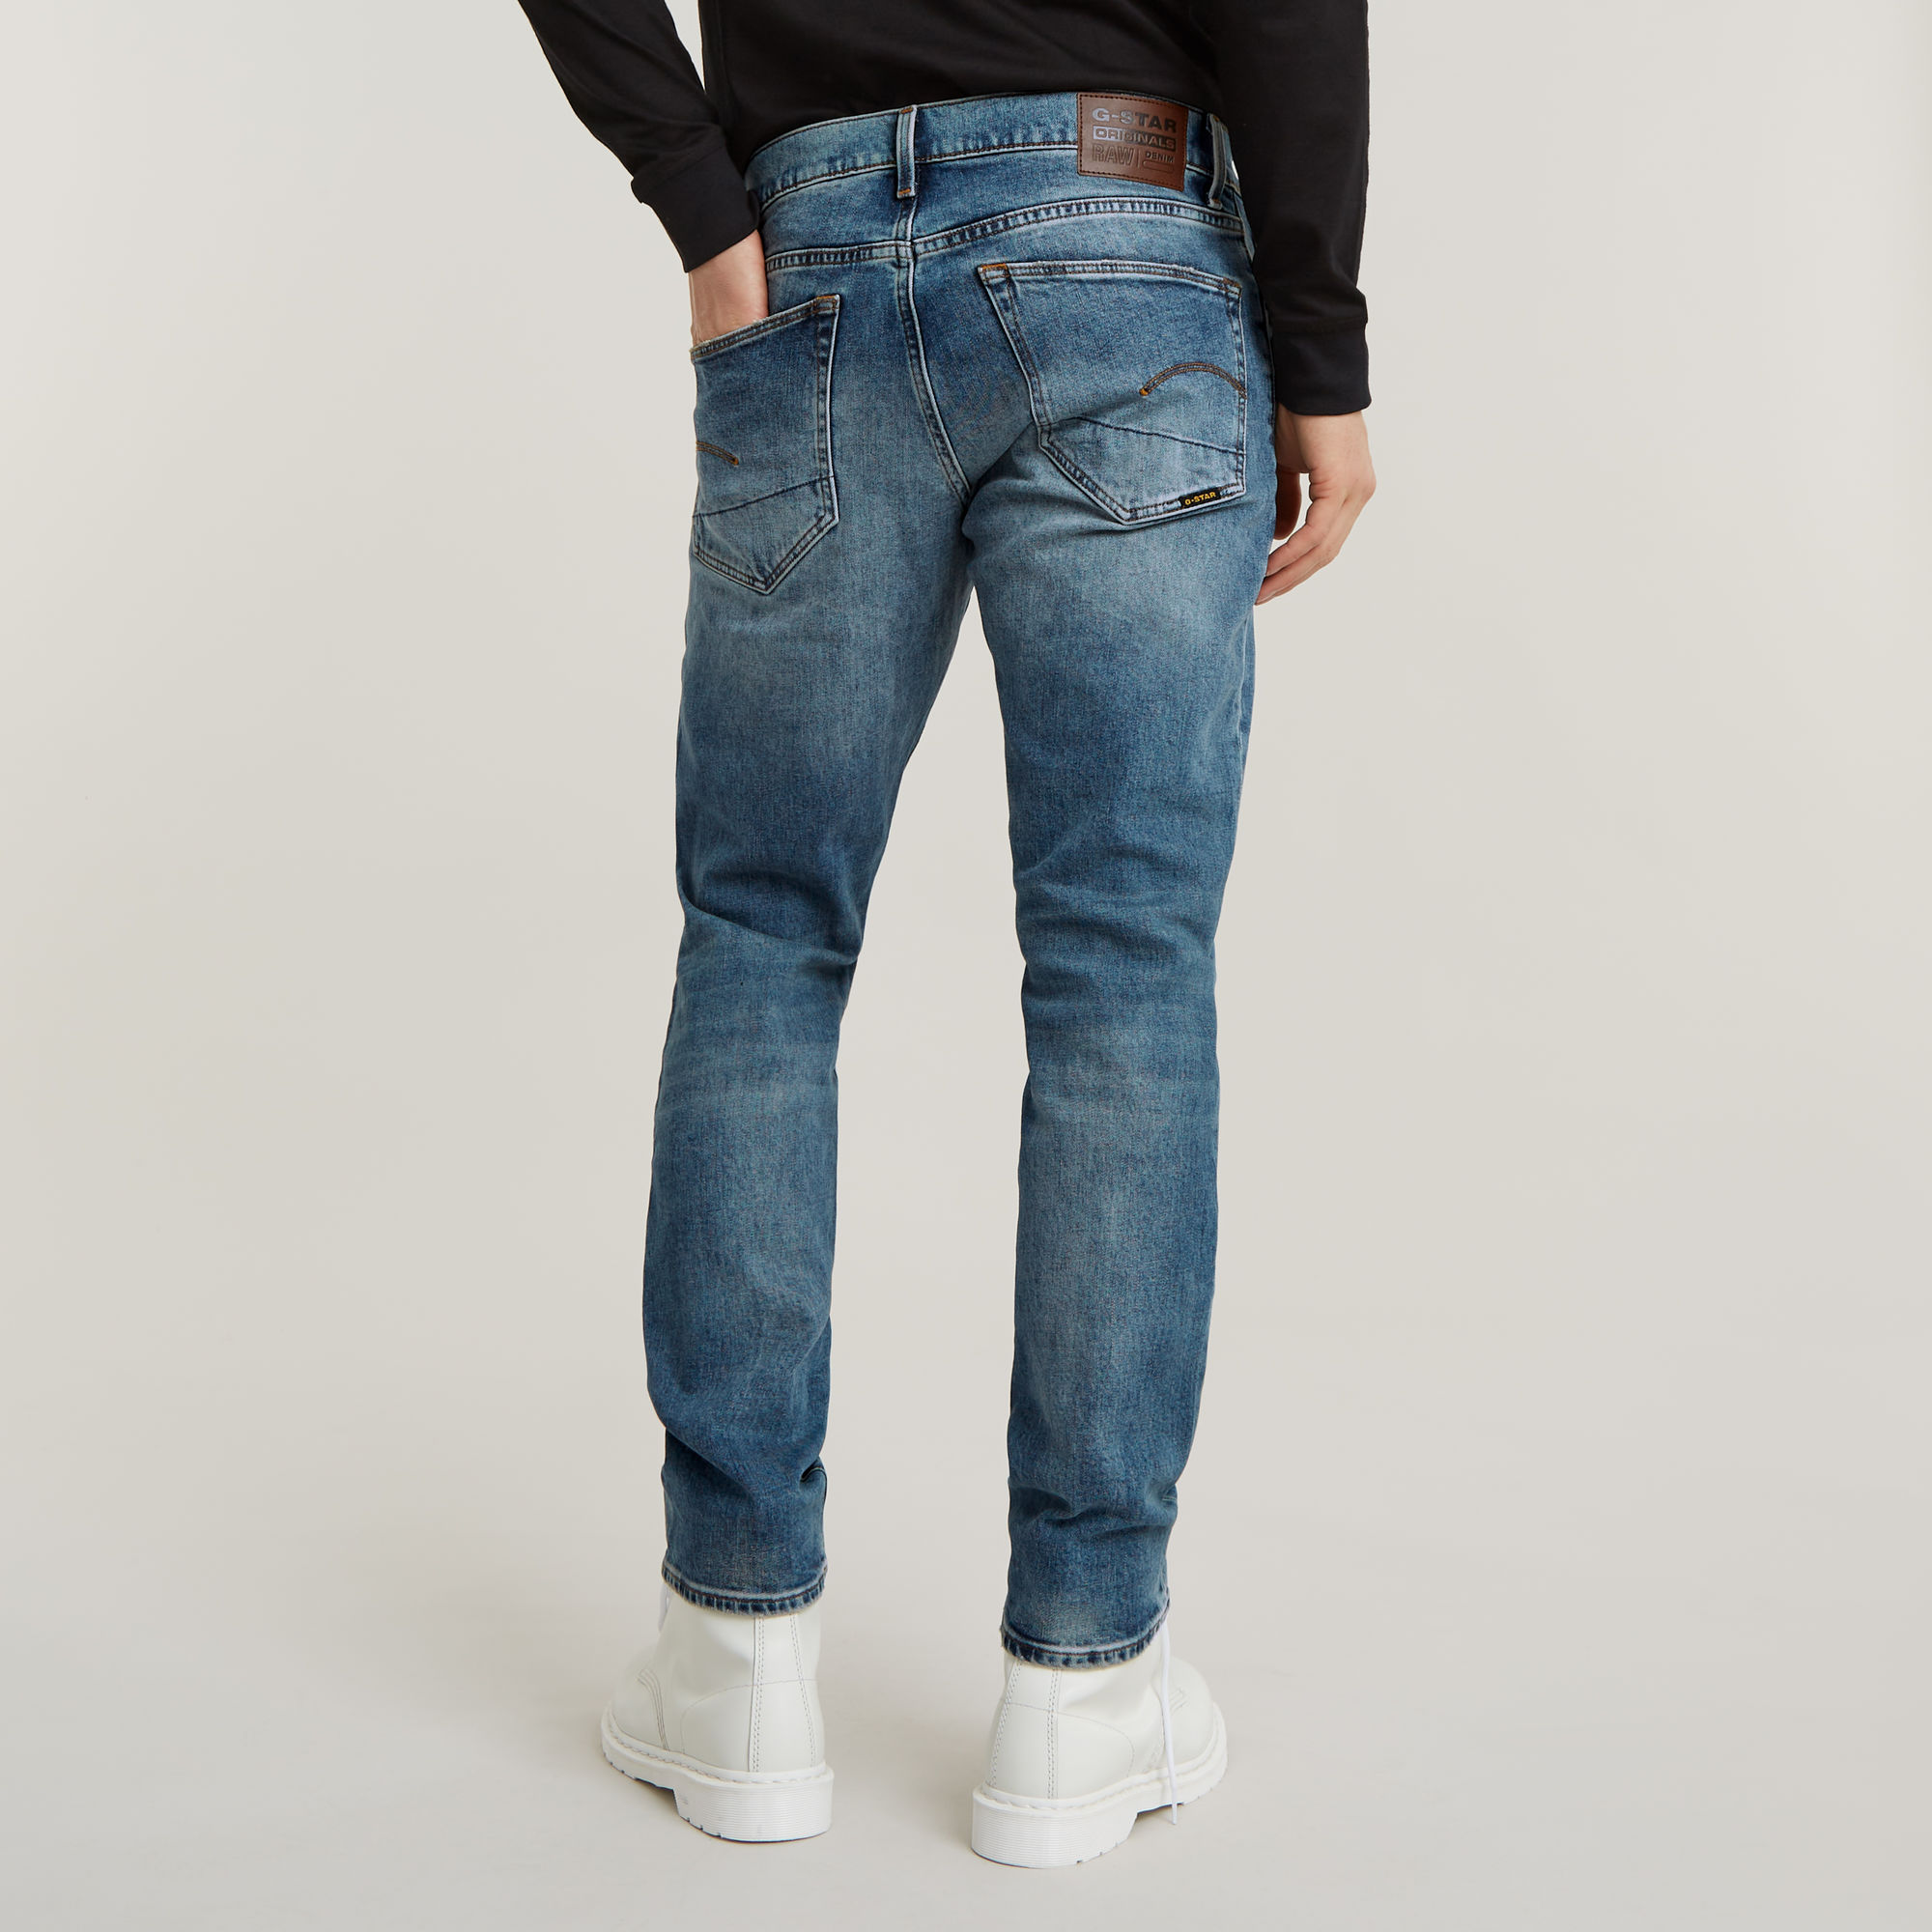 Feindseligkeit Incubus Grasen jeans g star raw 3301 Einfach zu ...